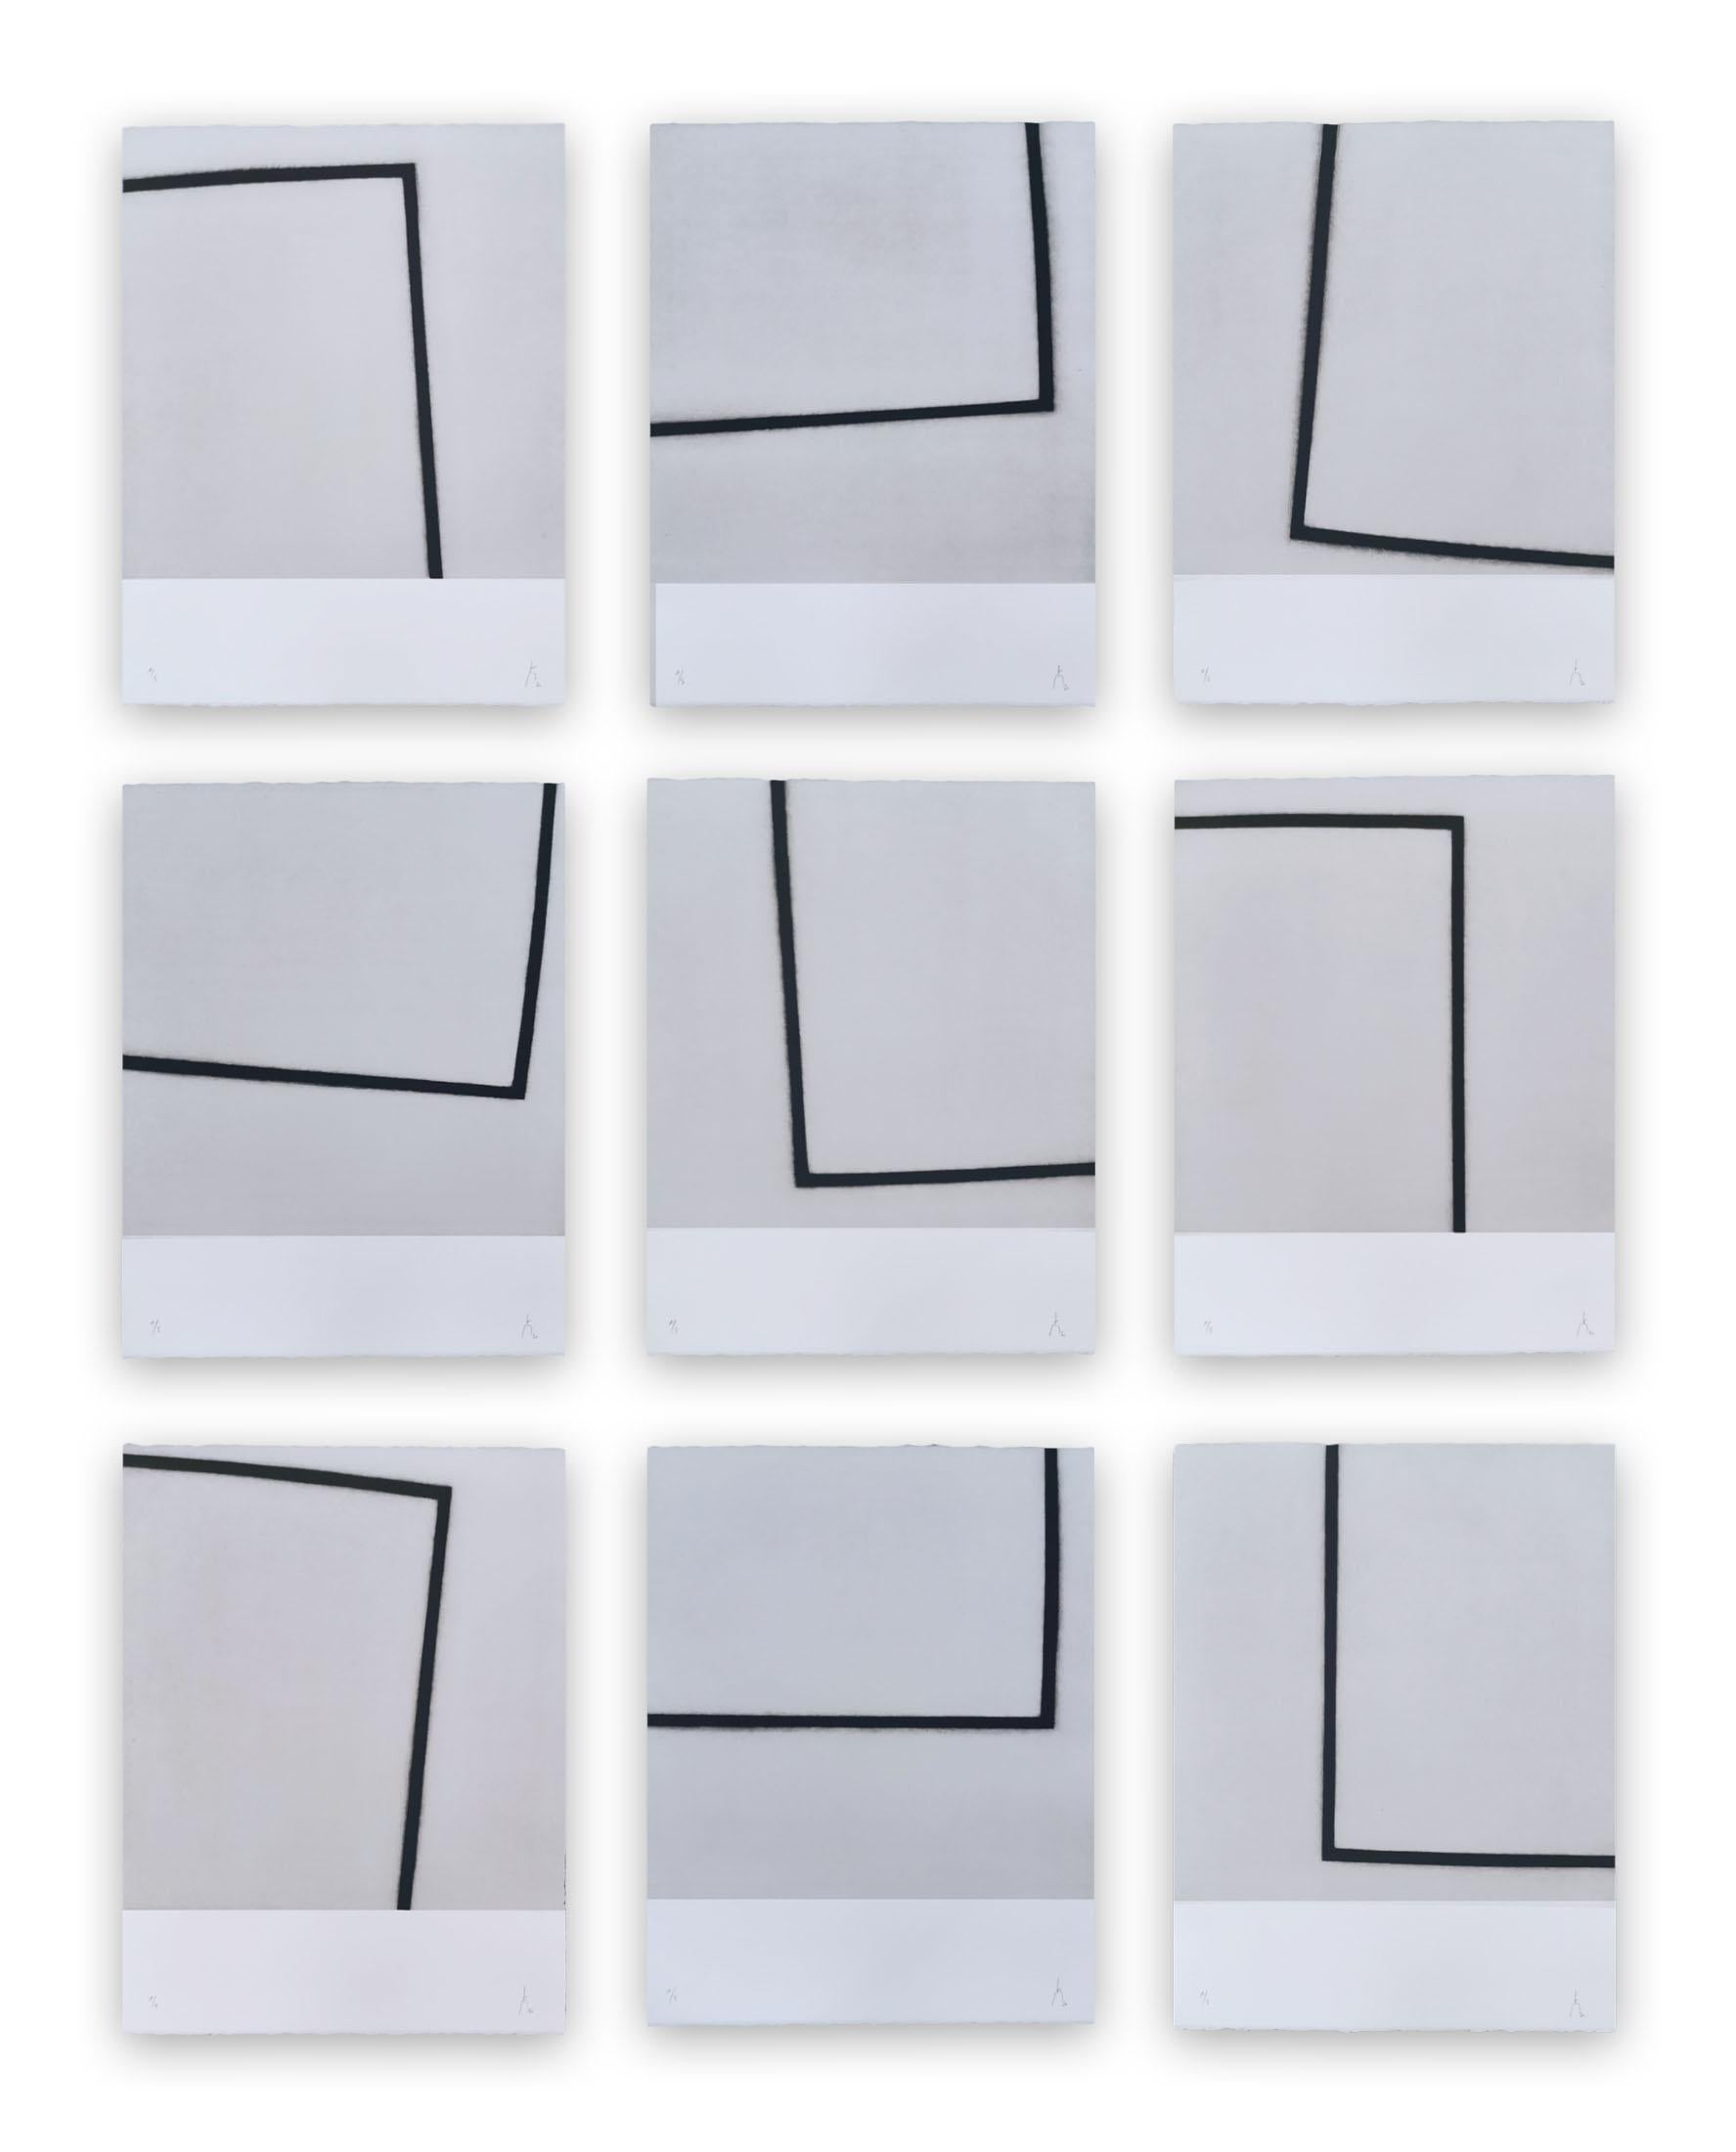 Pierre Muckensturm Abstract Print – 201R002 ABC (Abstrakter Druck)